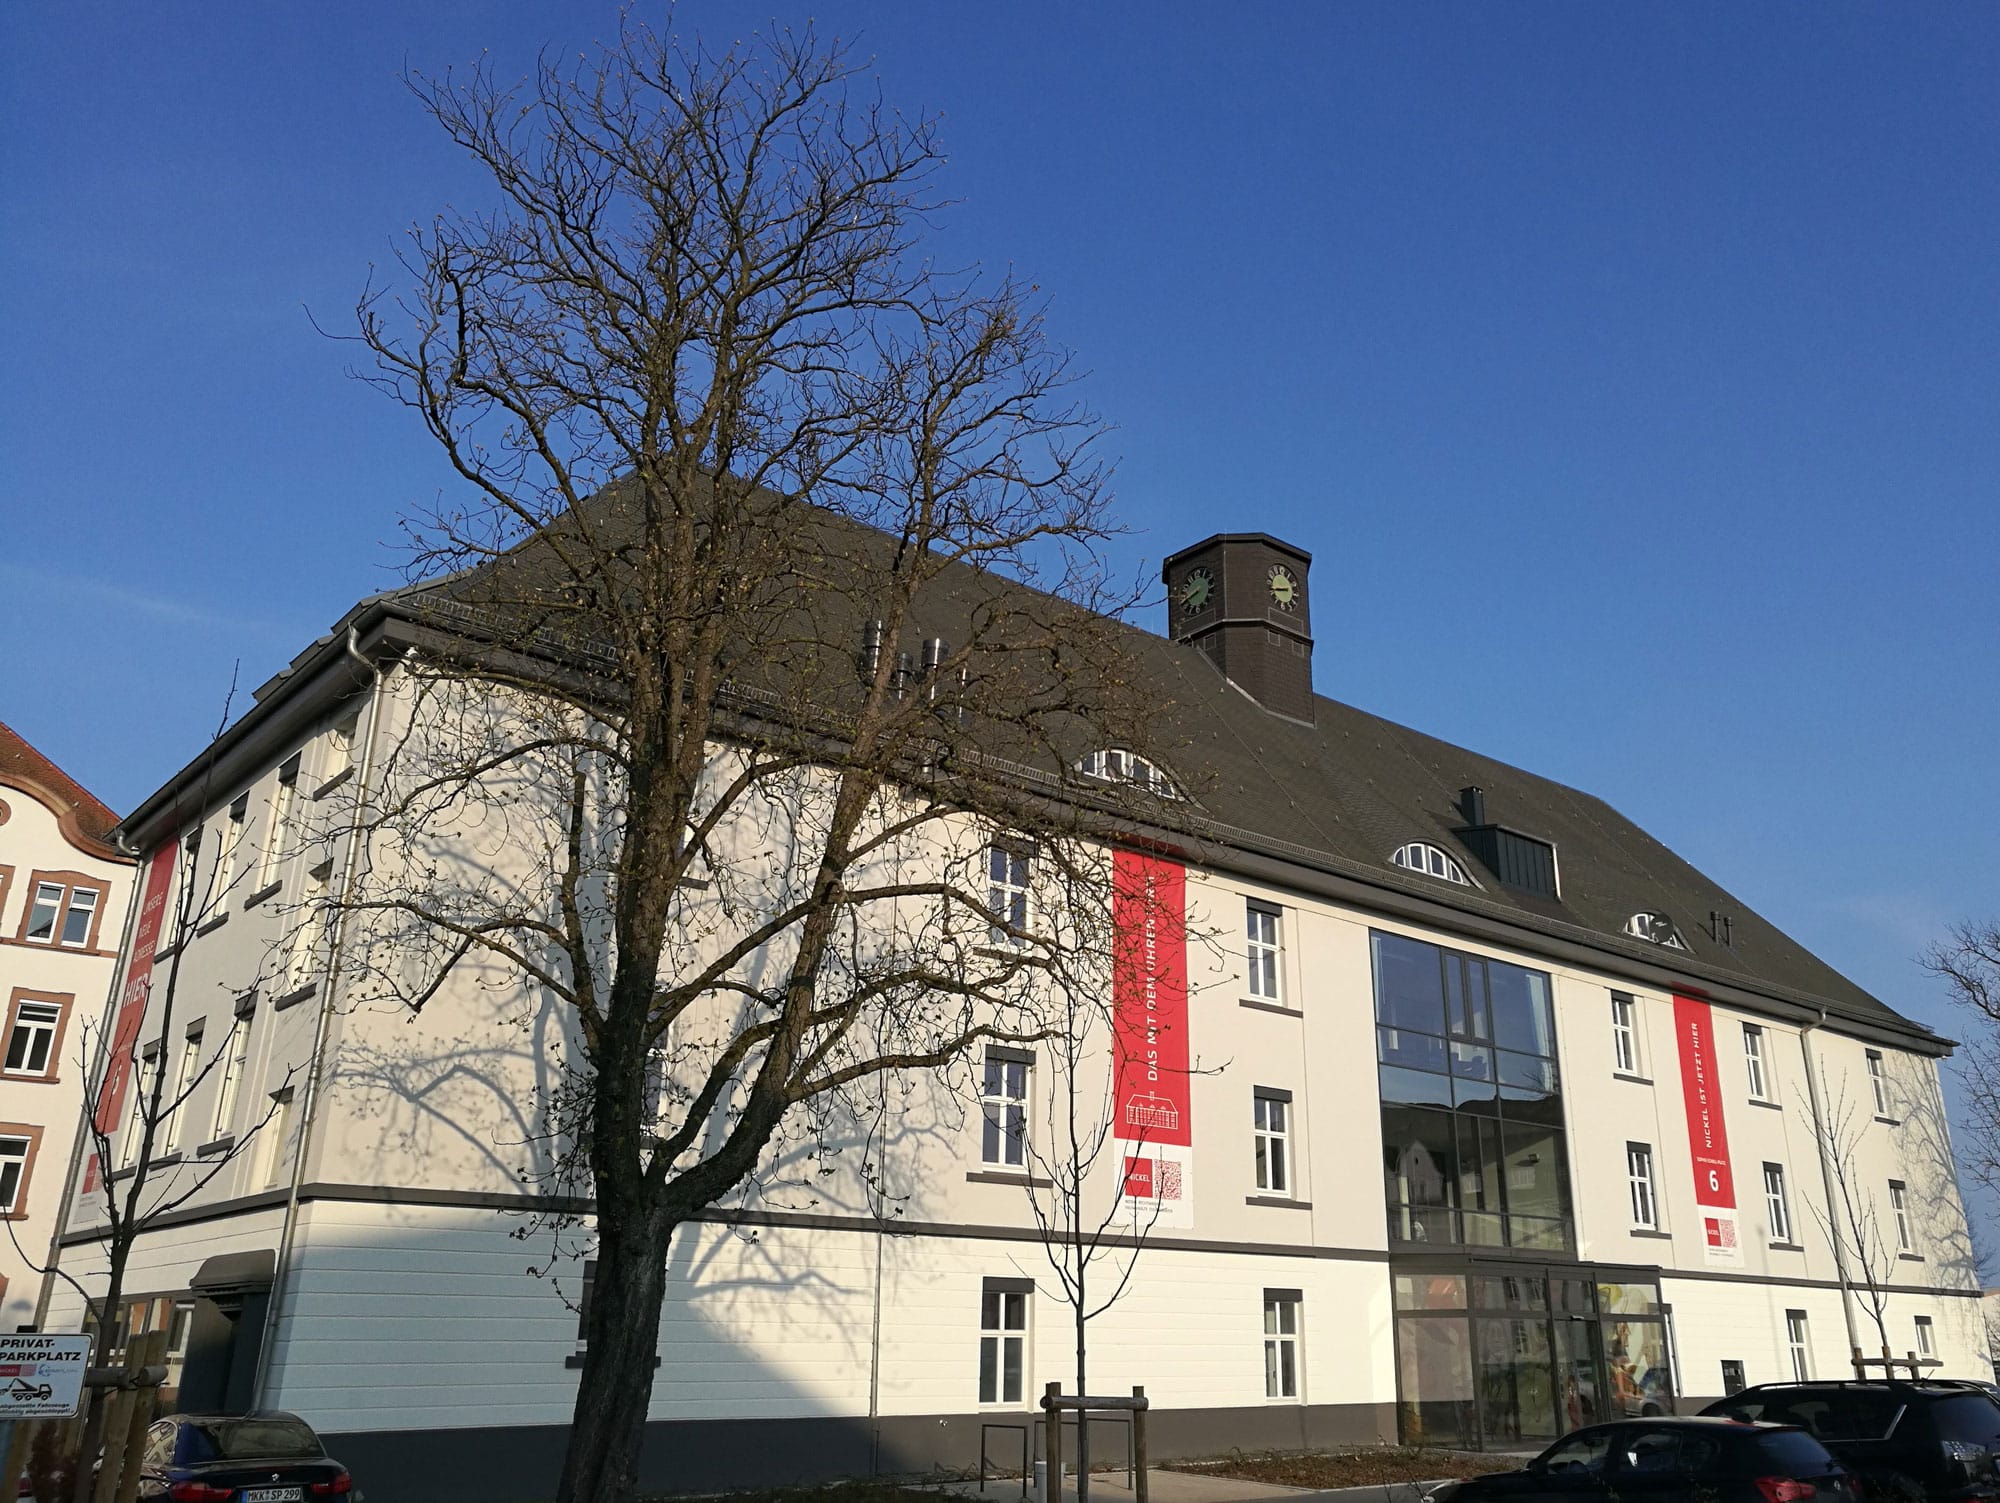 The refurbished SimPlan office building in Hanau